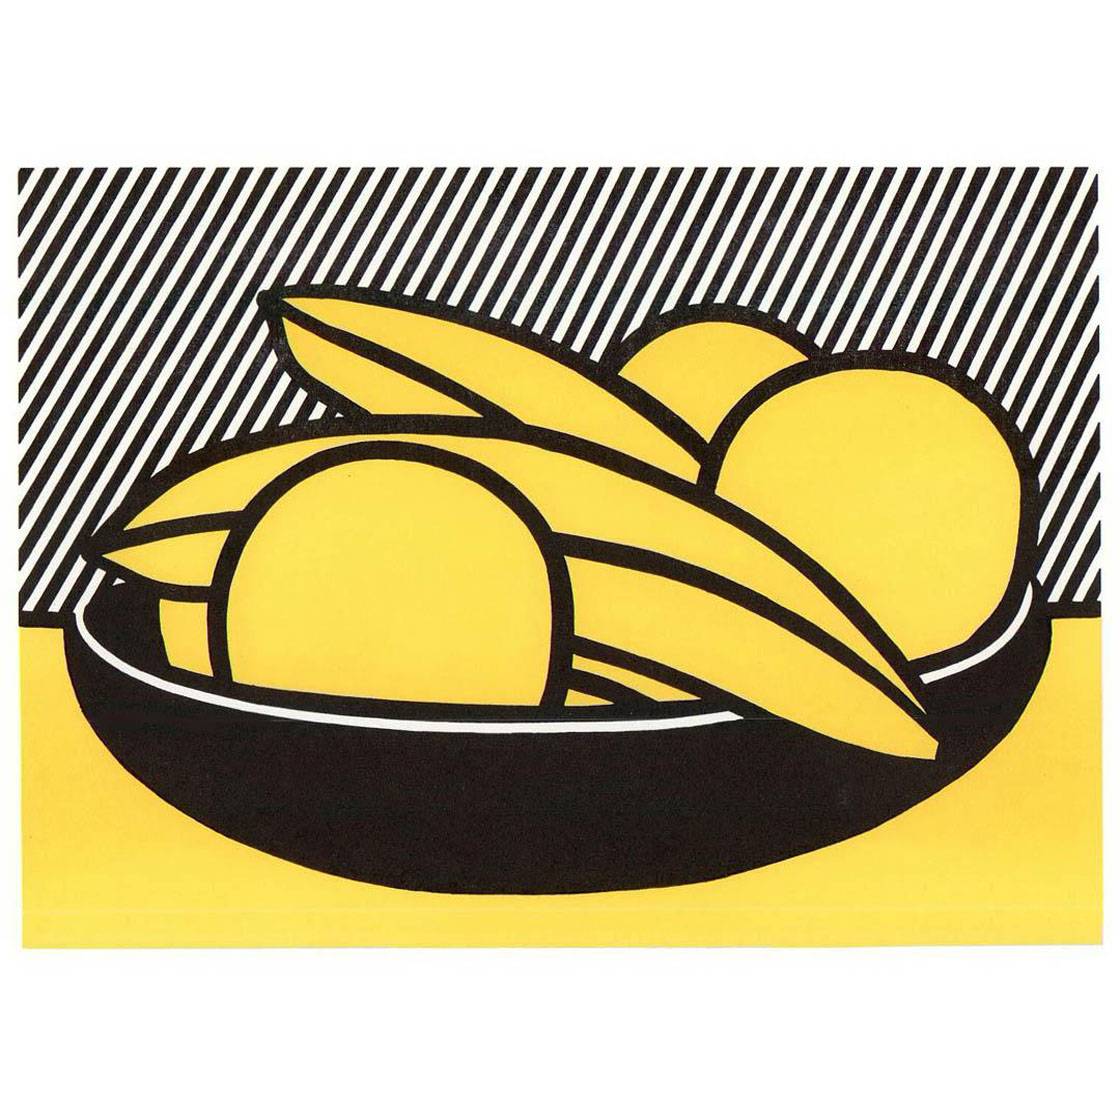 Roy Lichtenstein. Bananas and Grapefruit. 1972. Estate of Roy Lichtenstein